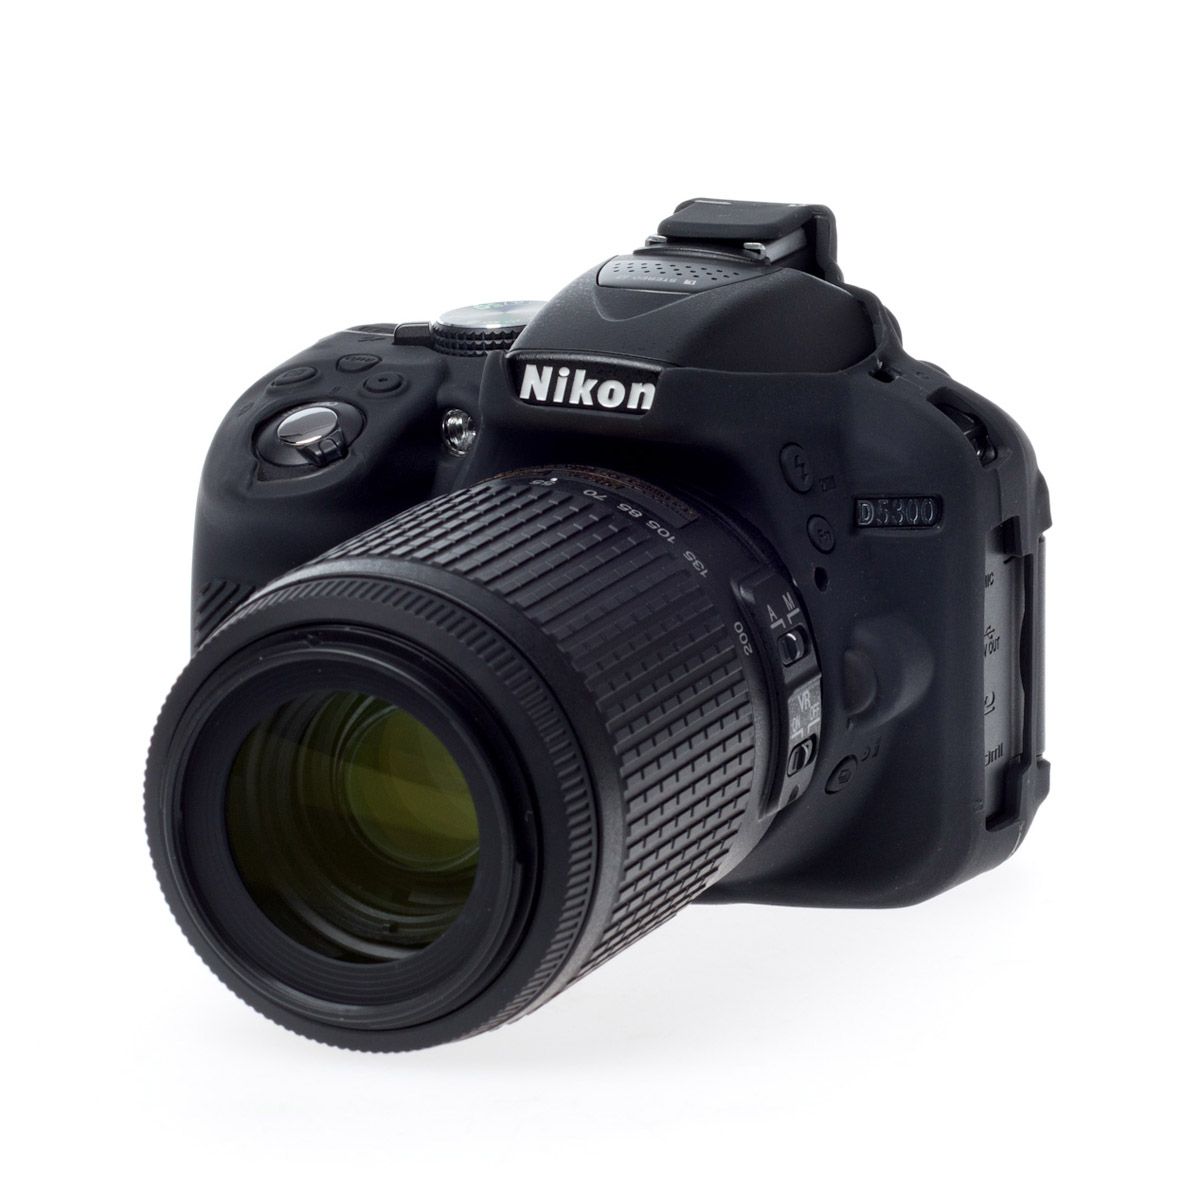 Deshacer orden Ciudadano Funda Protectora Easycover P/Cámara Fotográfica Nikon D5300 - Fotomecánica